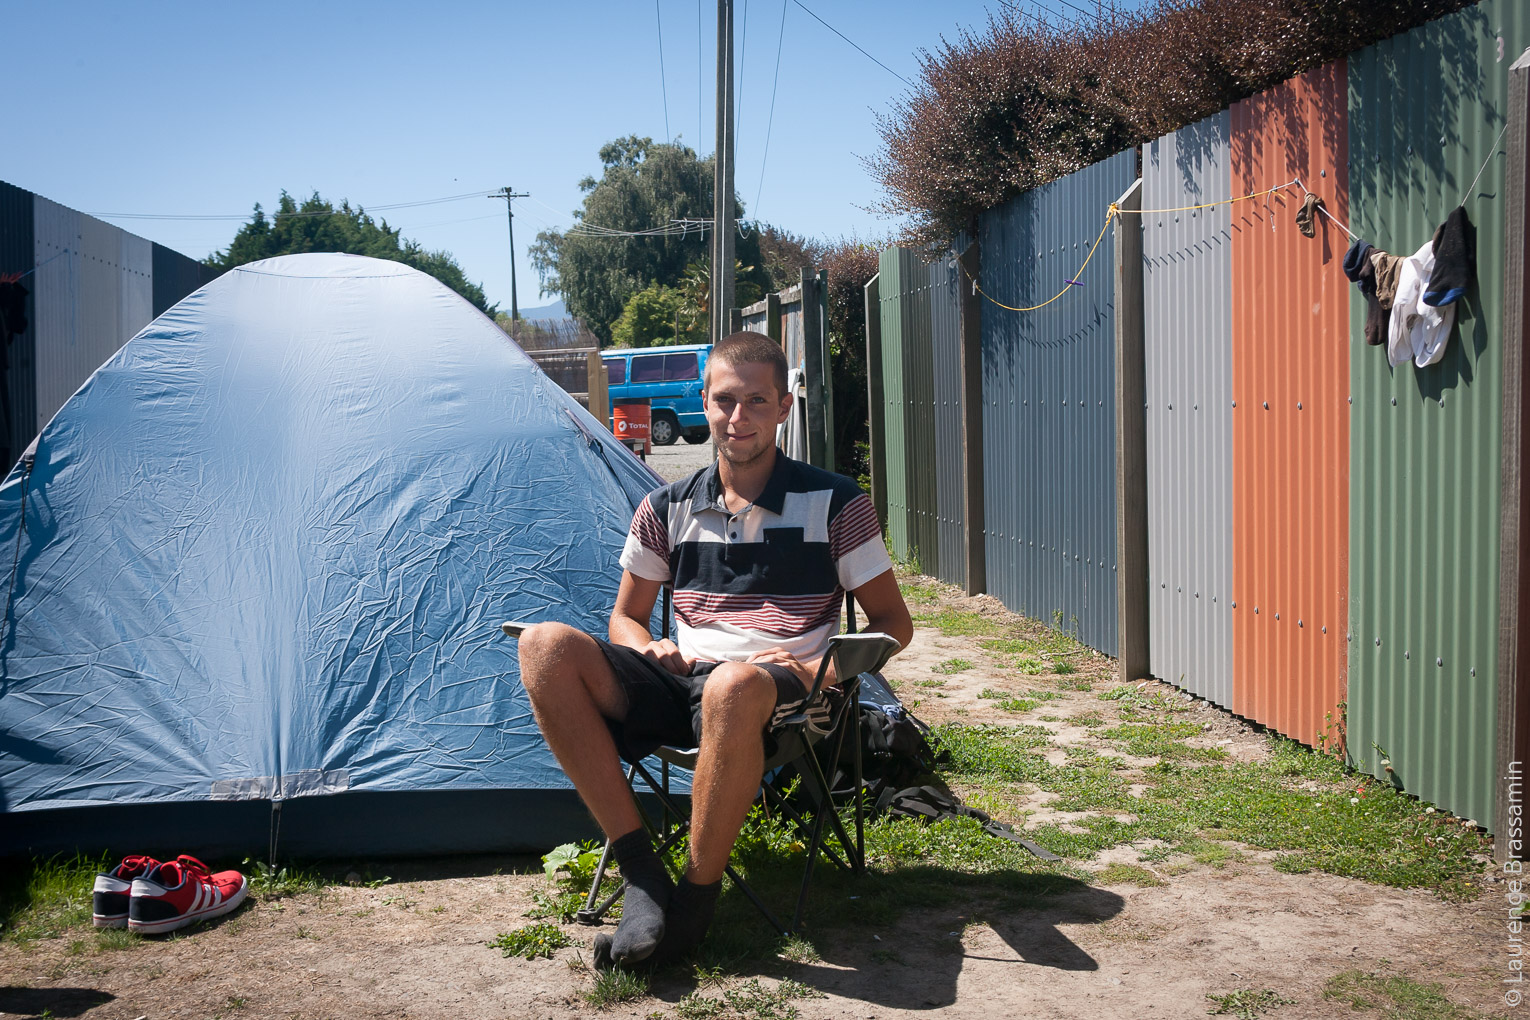 Jonas, 20 ans, est Allemand et travaille dans les vignes à Blenheim. Il loge dans sa tente à Blenheim backpacker. Les conditions d'hébergement peuvent être précaires. Nous sommes en été, le soleil tape fort. Jonas travaille depuis plus de deux mois dans les vignobles de la région six jours sur sept, entre 7h et 16h, soit 48h par semaine. Il dort dans la tente "pour l'aventure" me dit-il. Pour économiser surtout (il paie seulement 70$/semaine) et peut-être aussi parce que les hébergements bons marchés sont pleins et qu'il n'a pas vraiment le temps de prospecter.